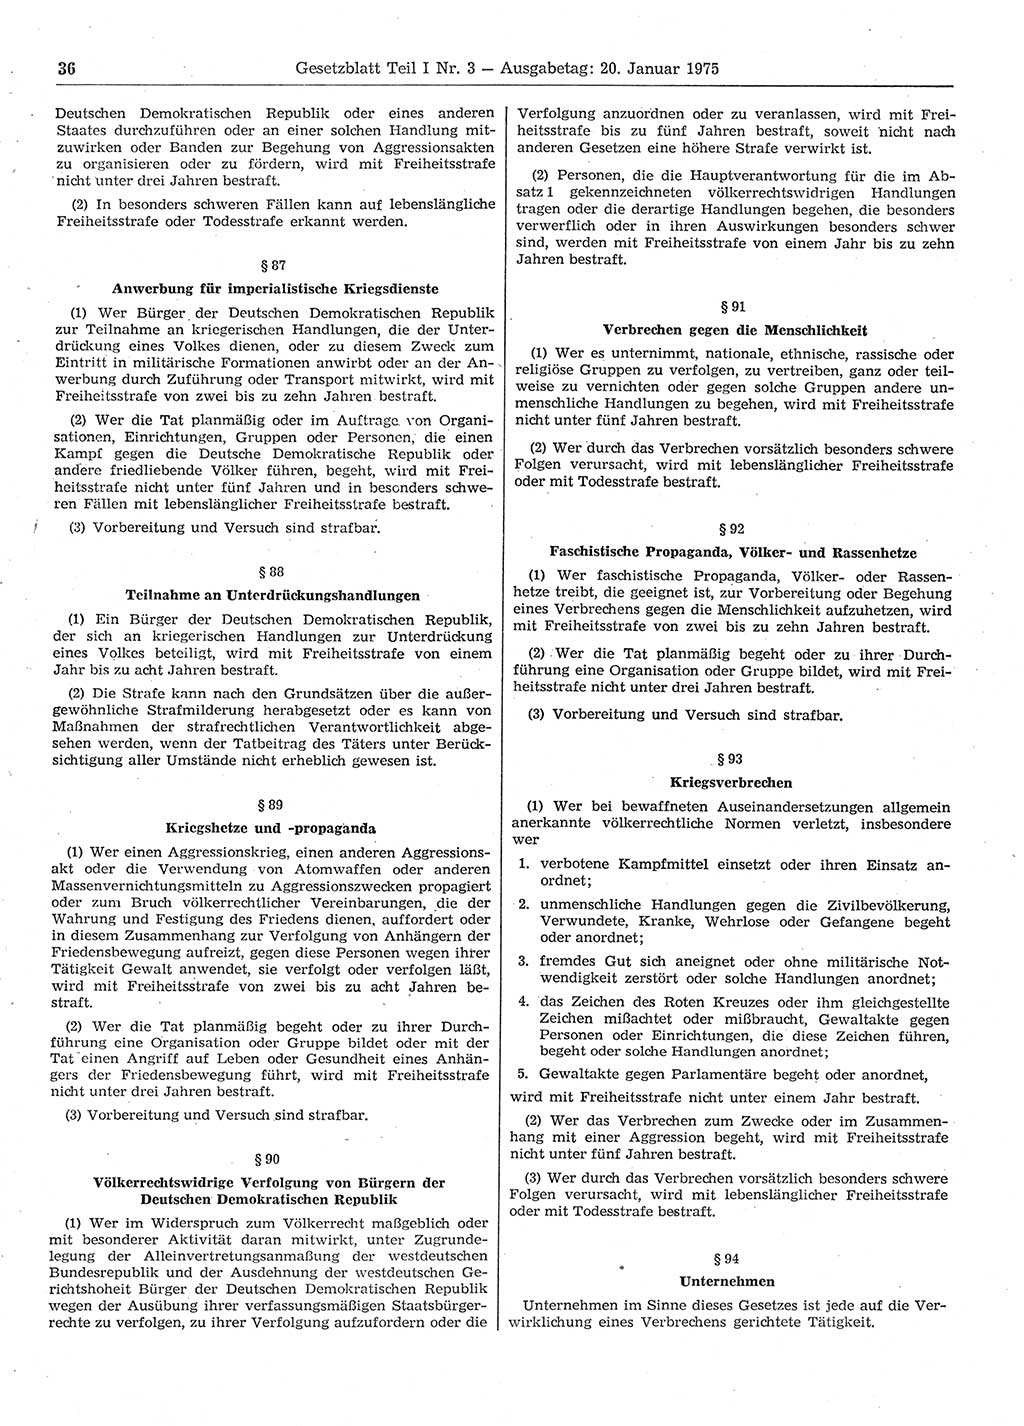 Gesetzblatt (GBl.) der Deutschen Demokratischen Republik (DDR) Teil Ⅰ 1975, Seite 36 (GBl. DDR Ⅰ 1975, S. 36)